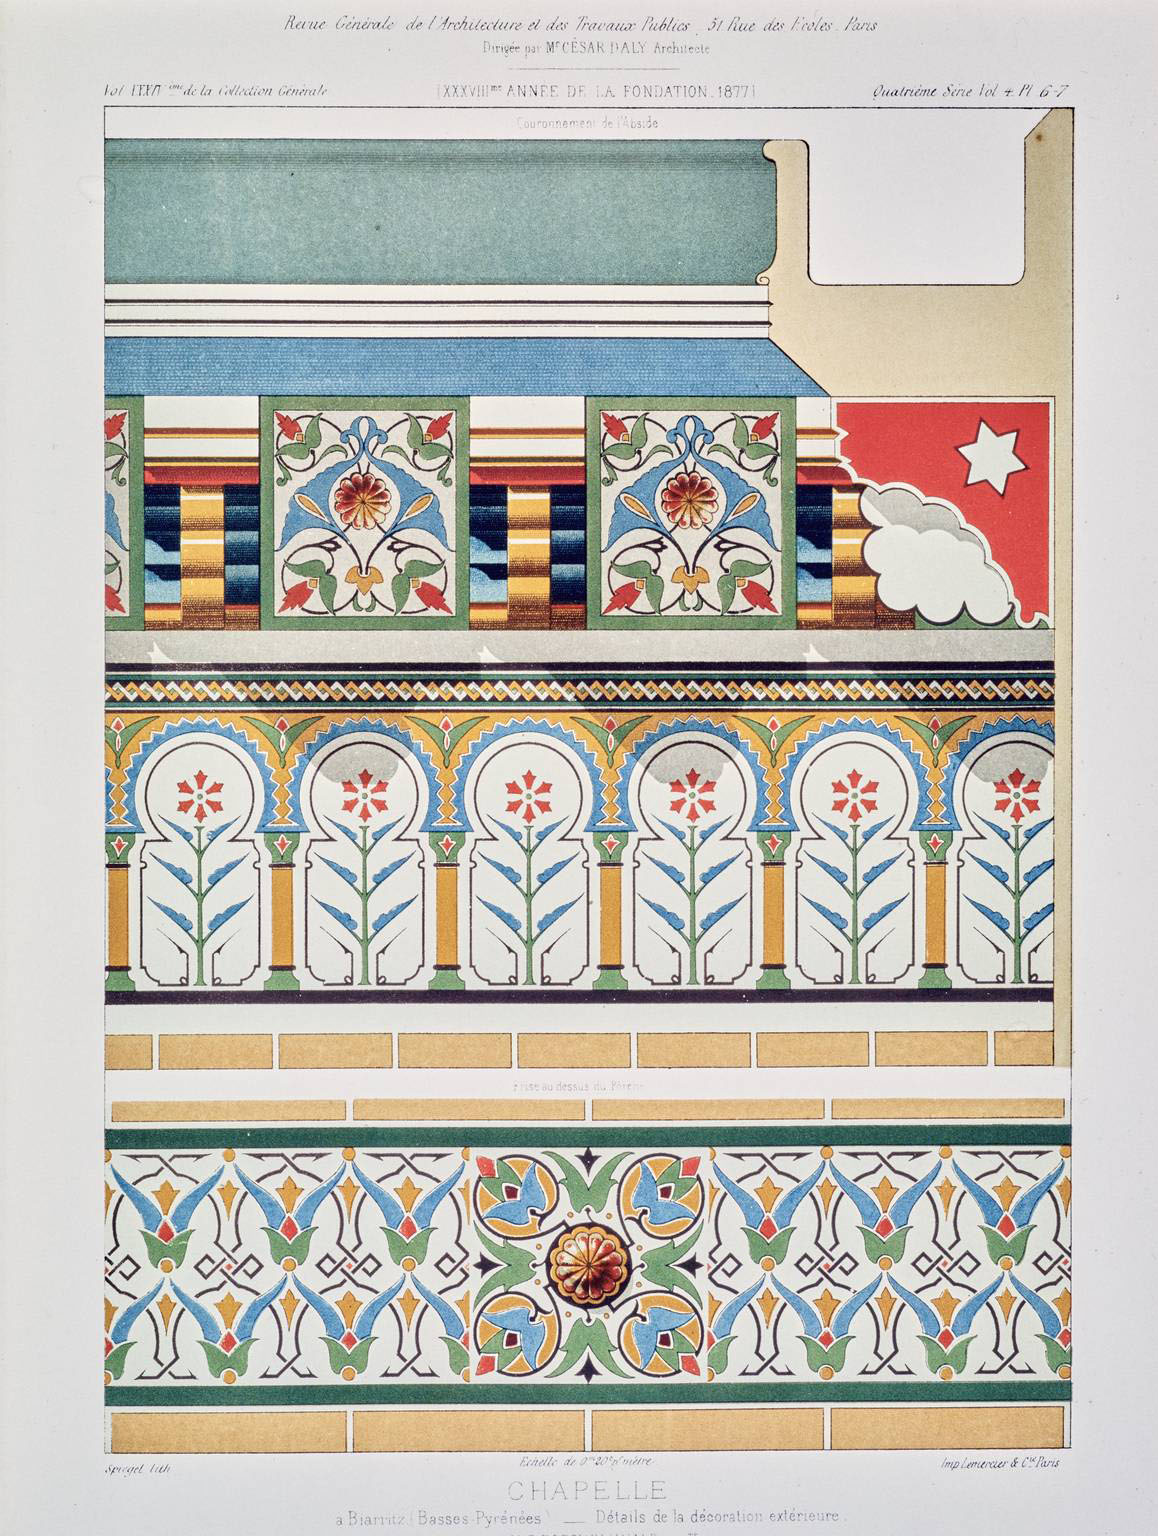 Détails de la décoration extérieure par E. Boeswillwald.